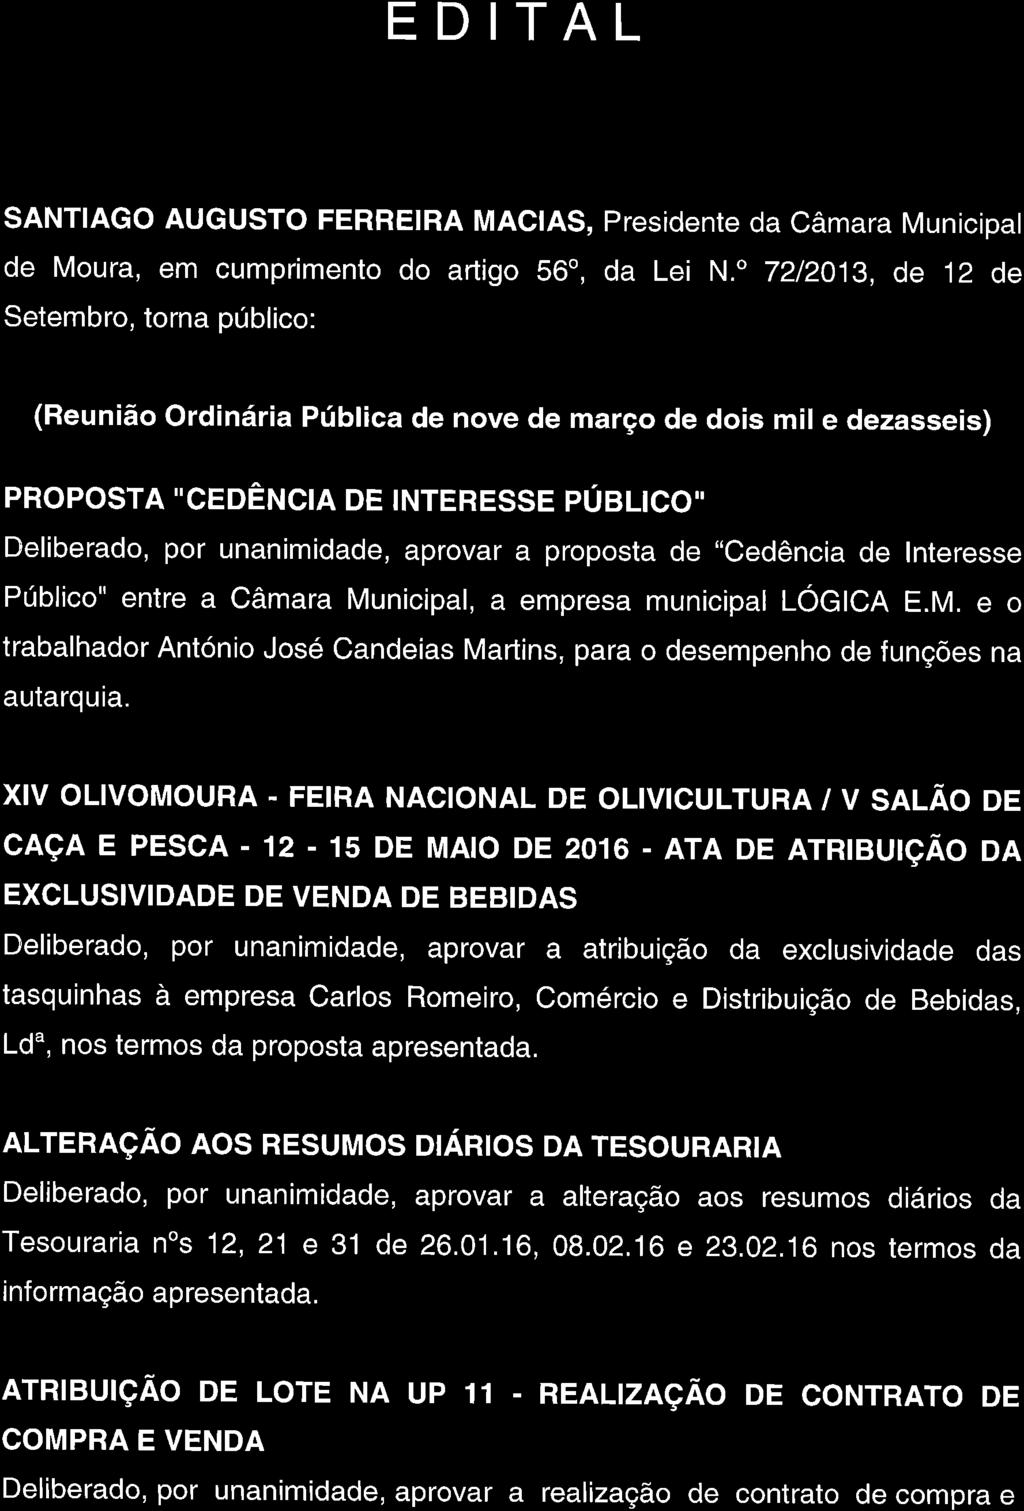 EDITAL SANTIAGO AUGUSTO FERREIRA MACIAS, Presidente da Câmara Municipal de Moura, em cumprimento do artigo 56o, da Lei N.